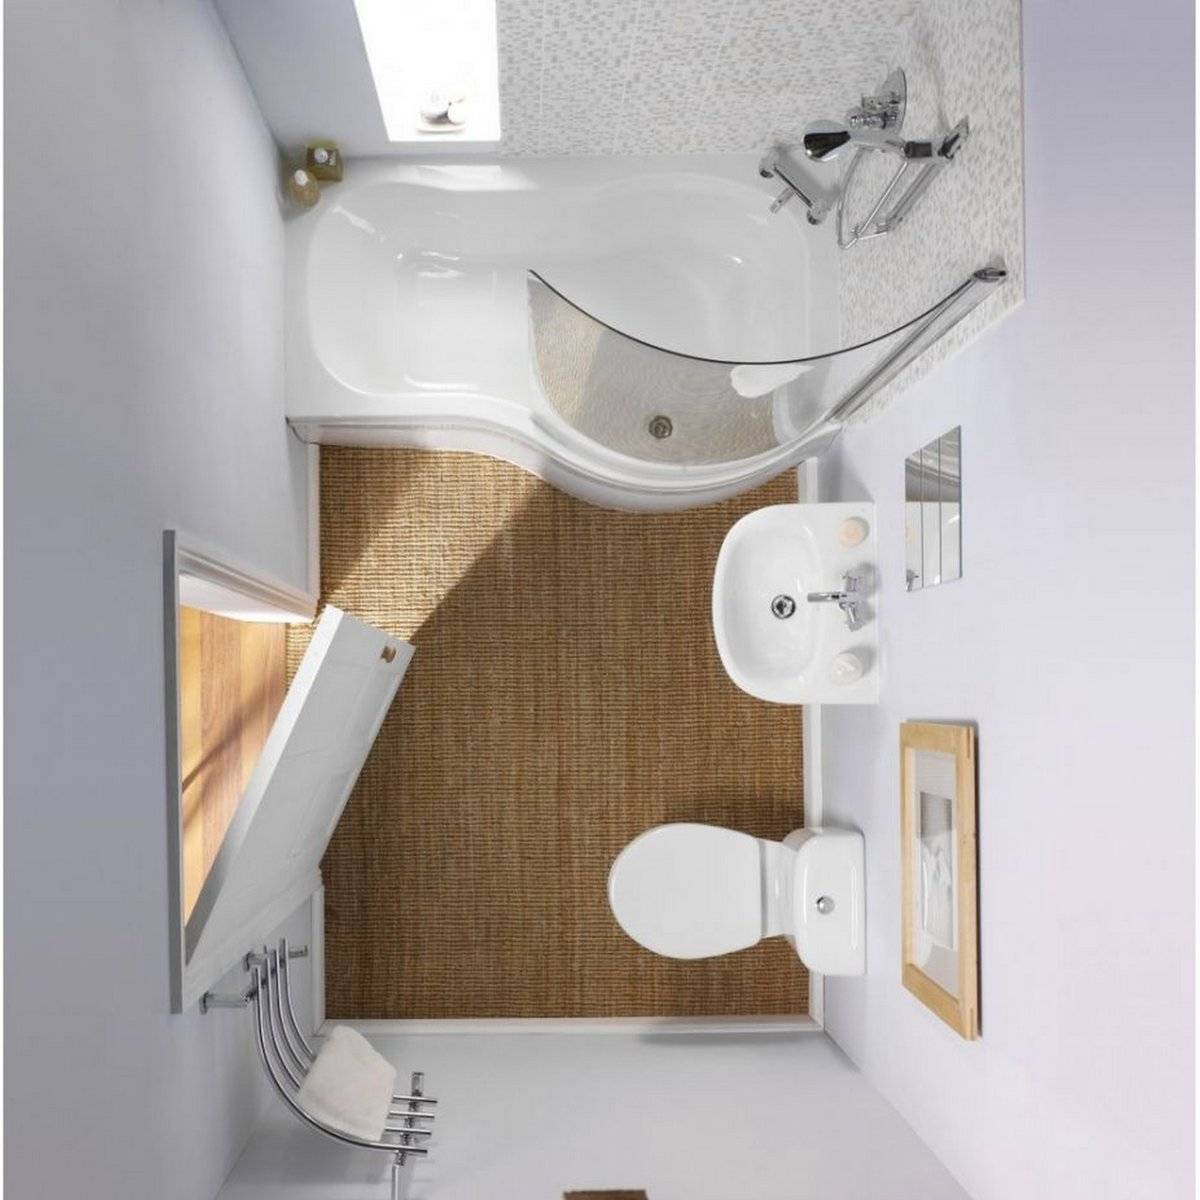 Размеры ванной комнаты и особенности планировок